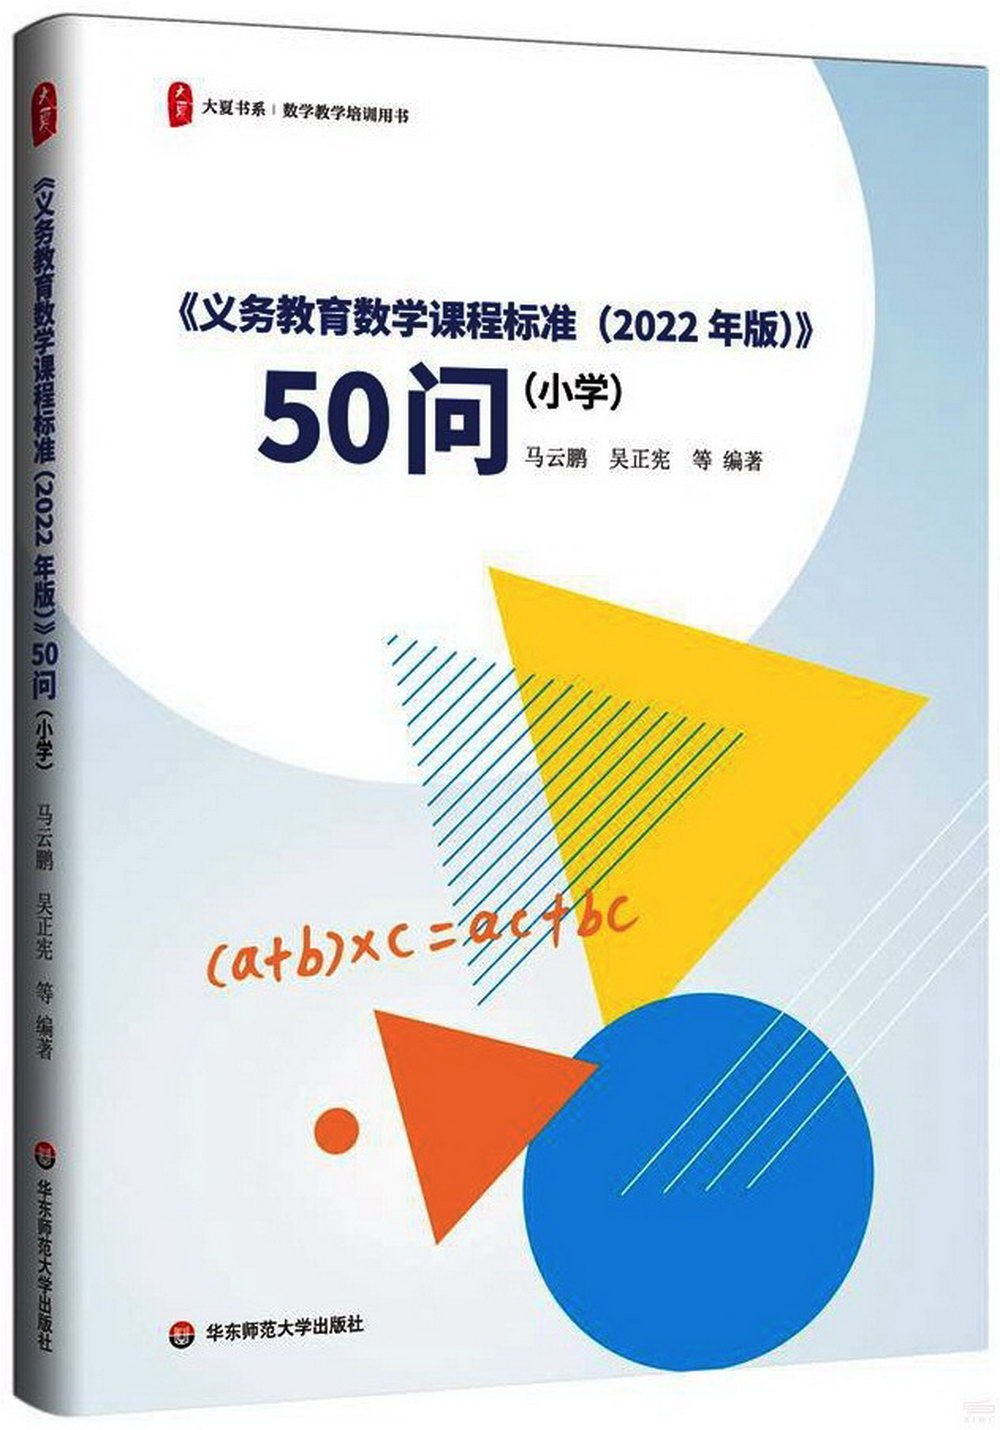 《義務教育數學課程標準(2022年版)》50問(小學)